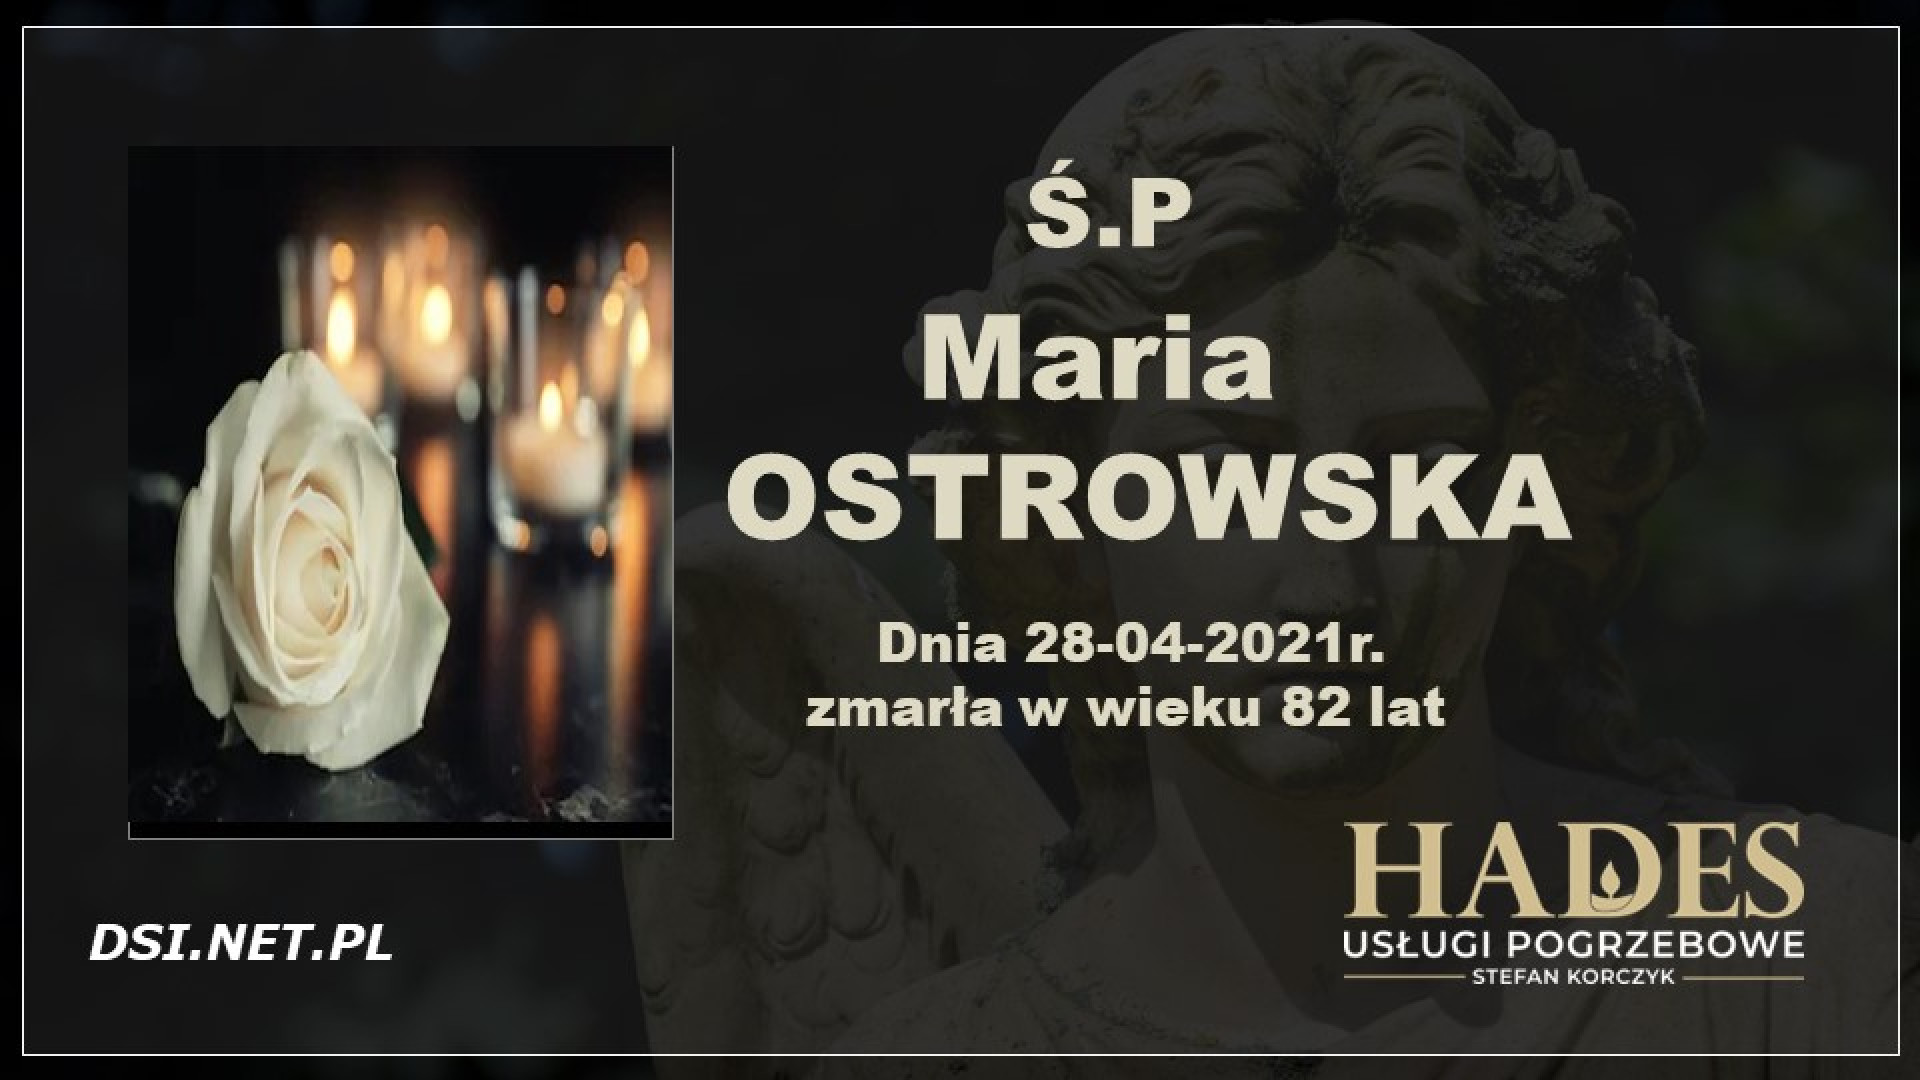 Ś.P. Maria Ostrowska